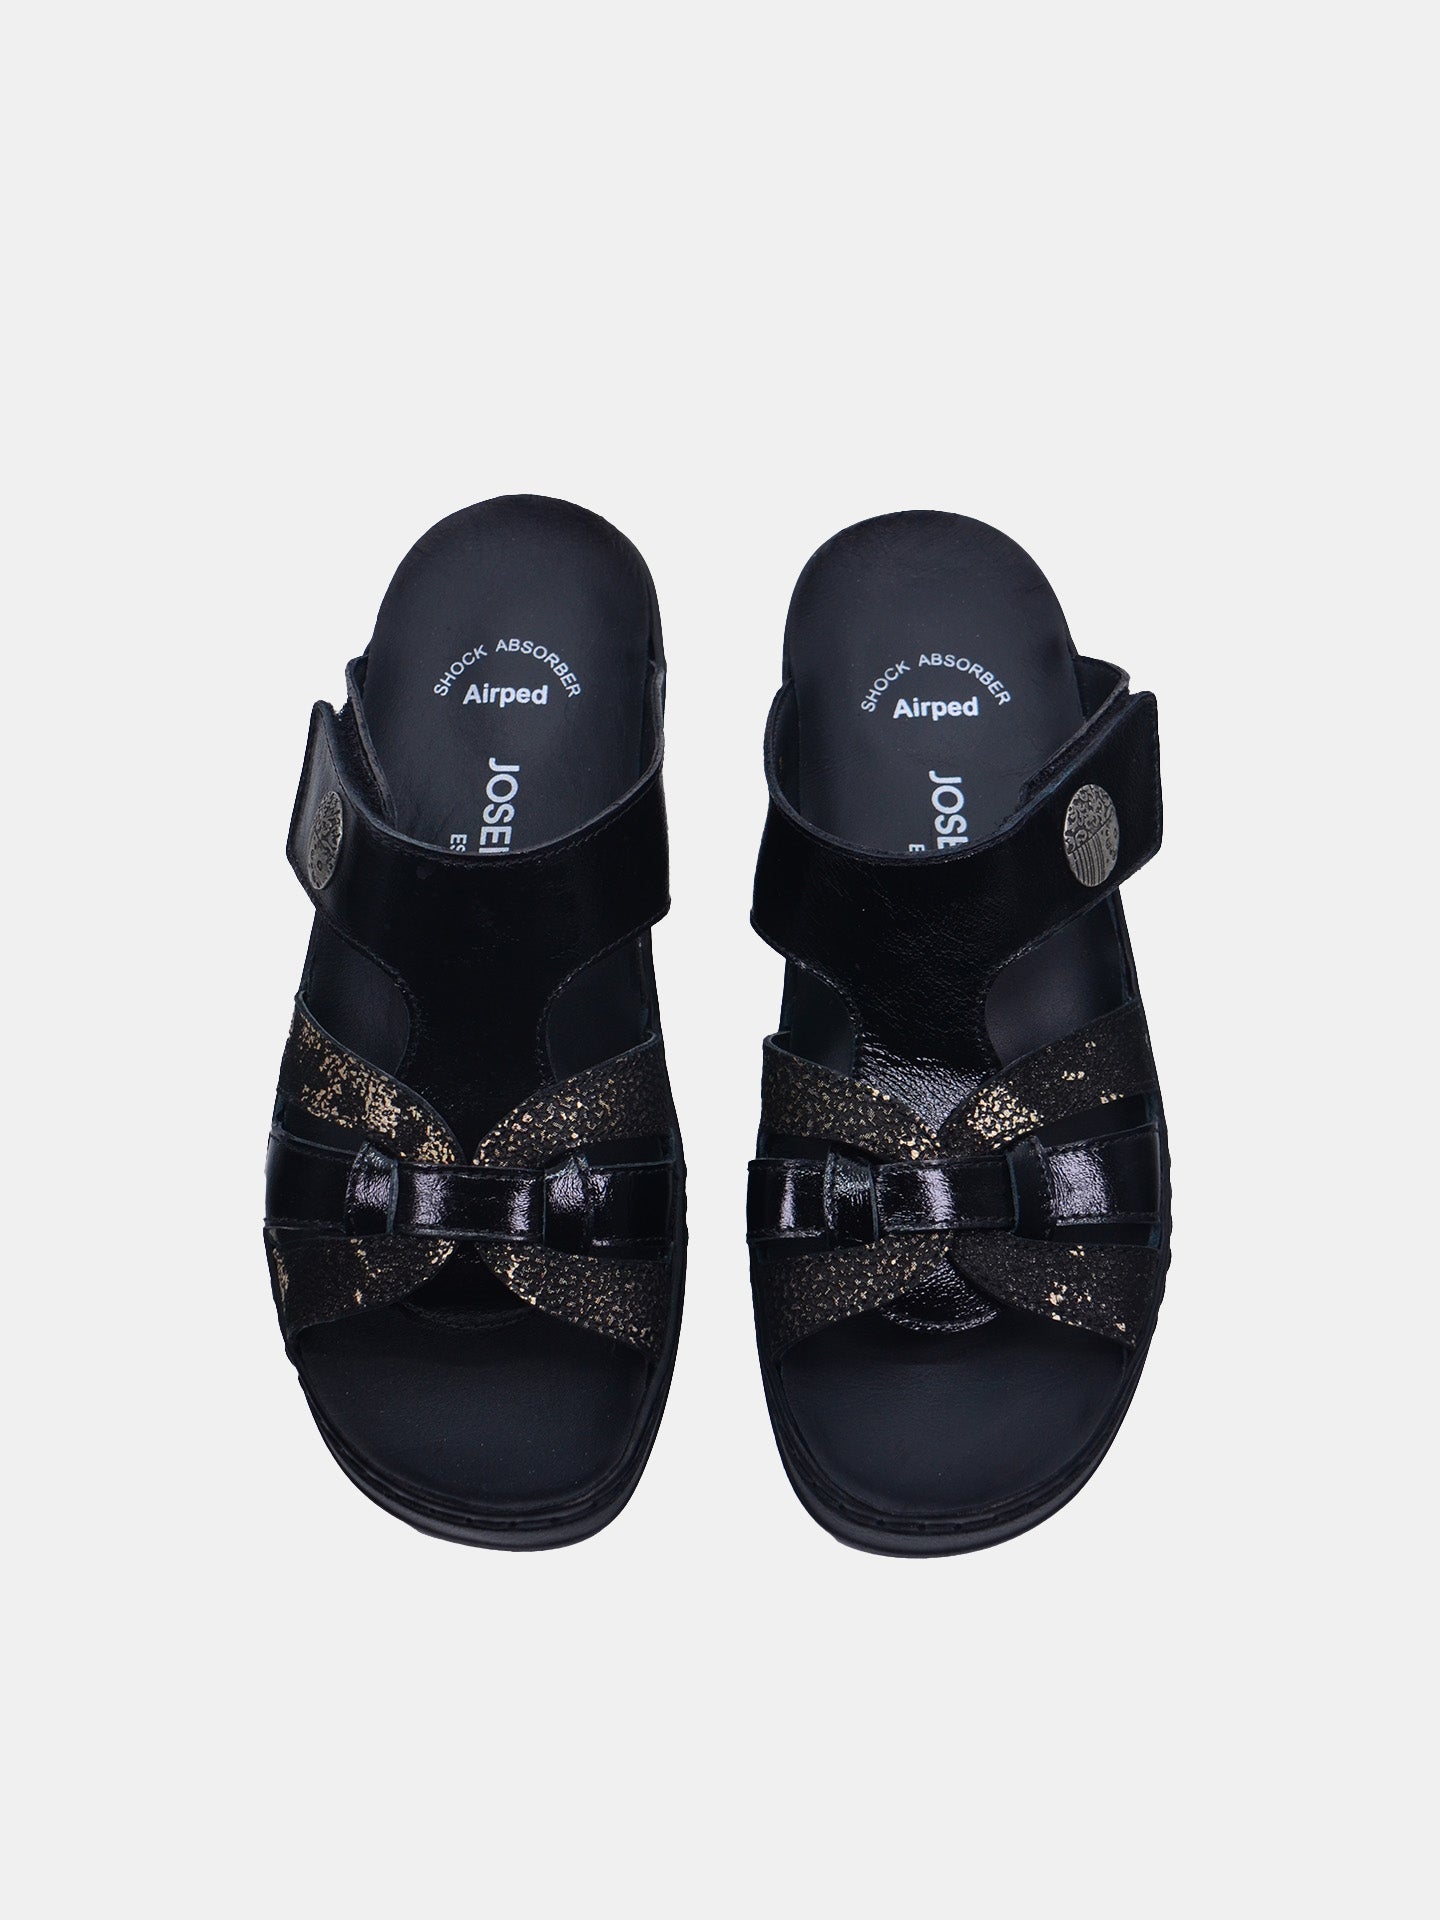 Josef Seibel 08809AR Women's Slider Sandals #color_Black / Gold